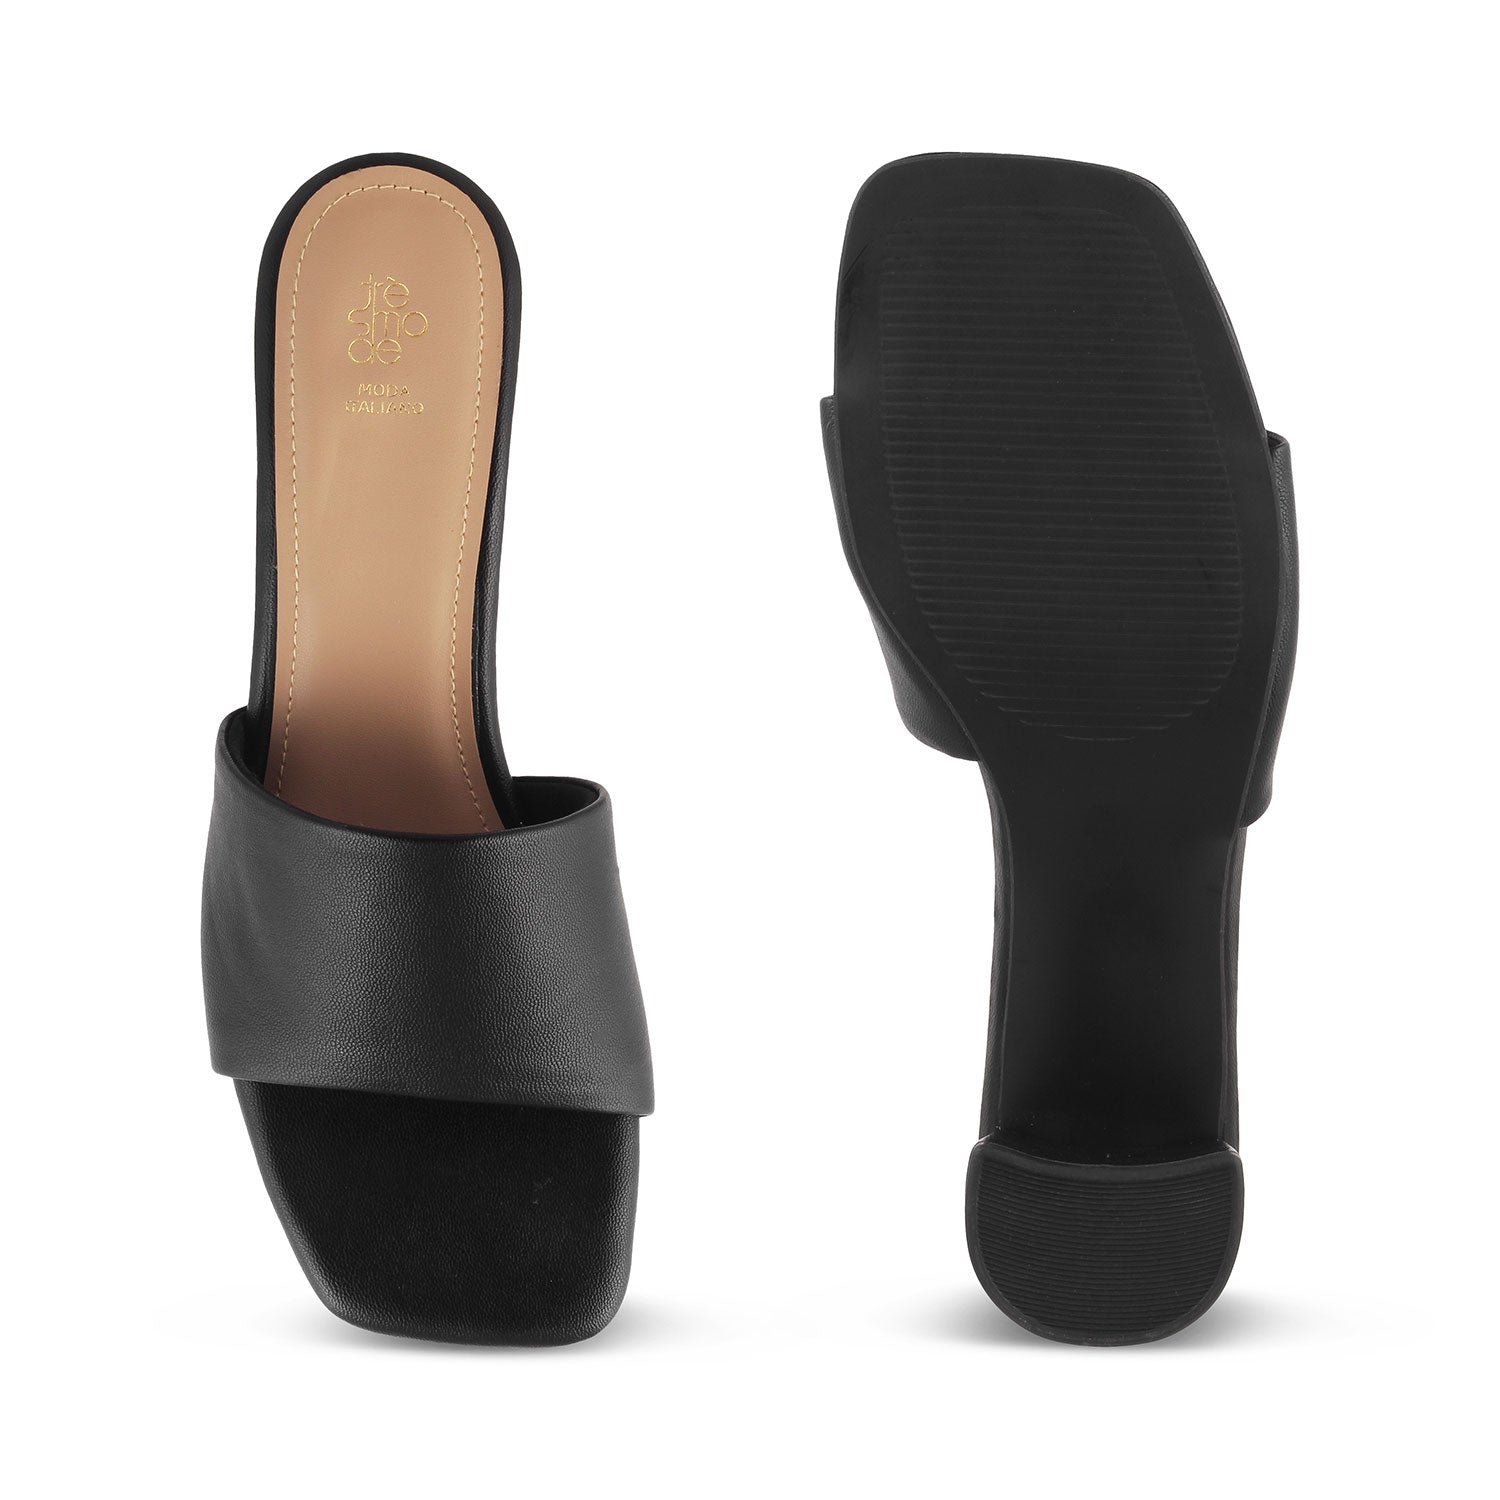 The Bariz Black Women's Casual Block Heel Sandals Tresmode